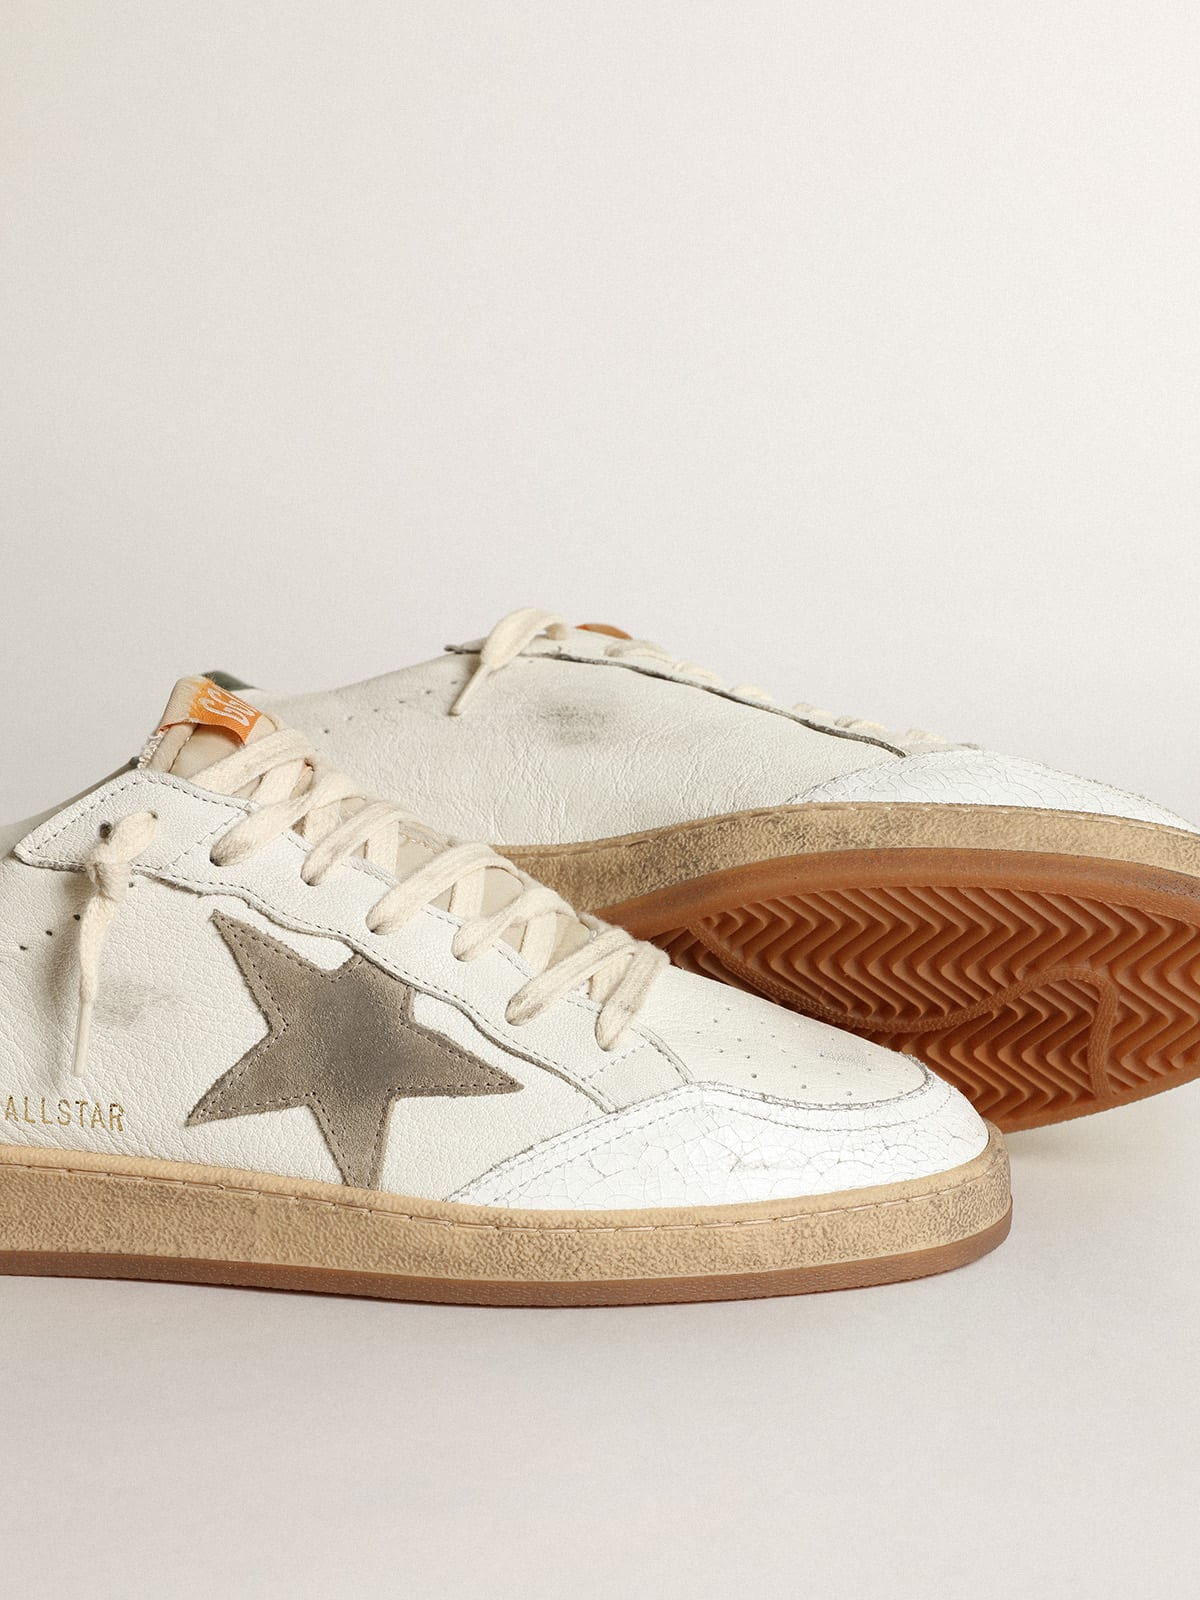 Golden Goose - Sneakers Ball Star en cuir nappa blanc avec étoile en daim couleur tourterelle et contrefort en cuir vert foncé in 